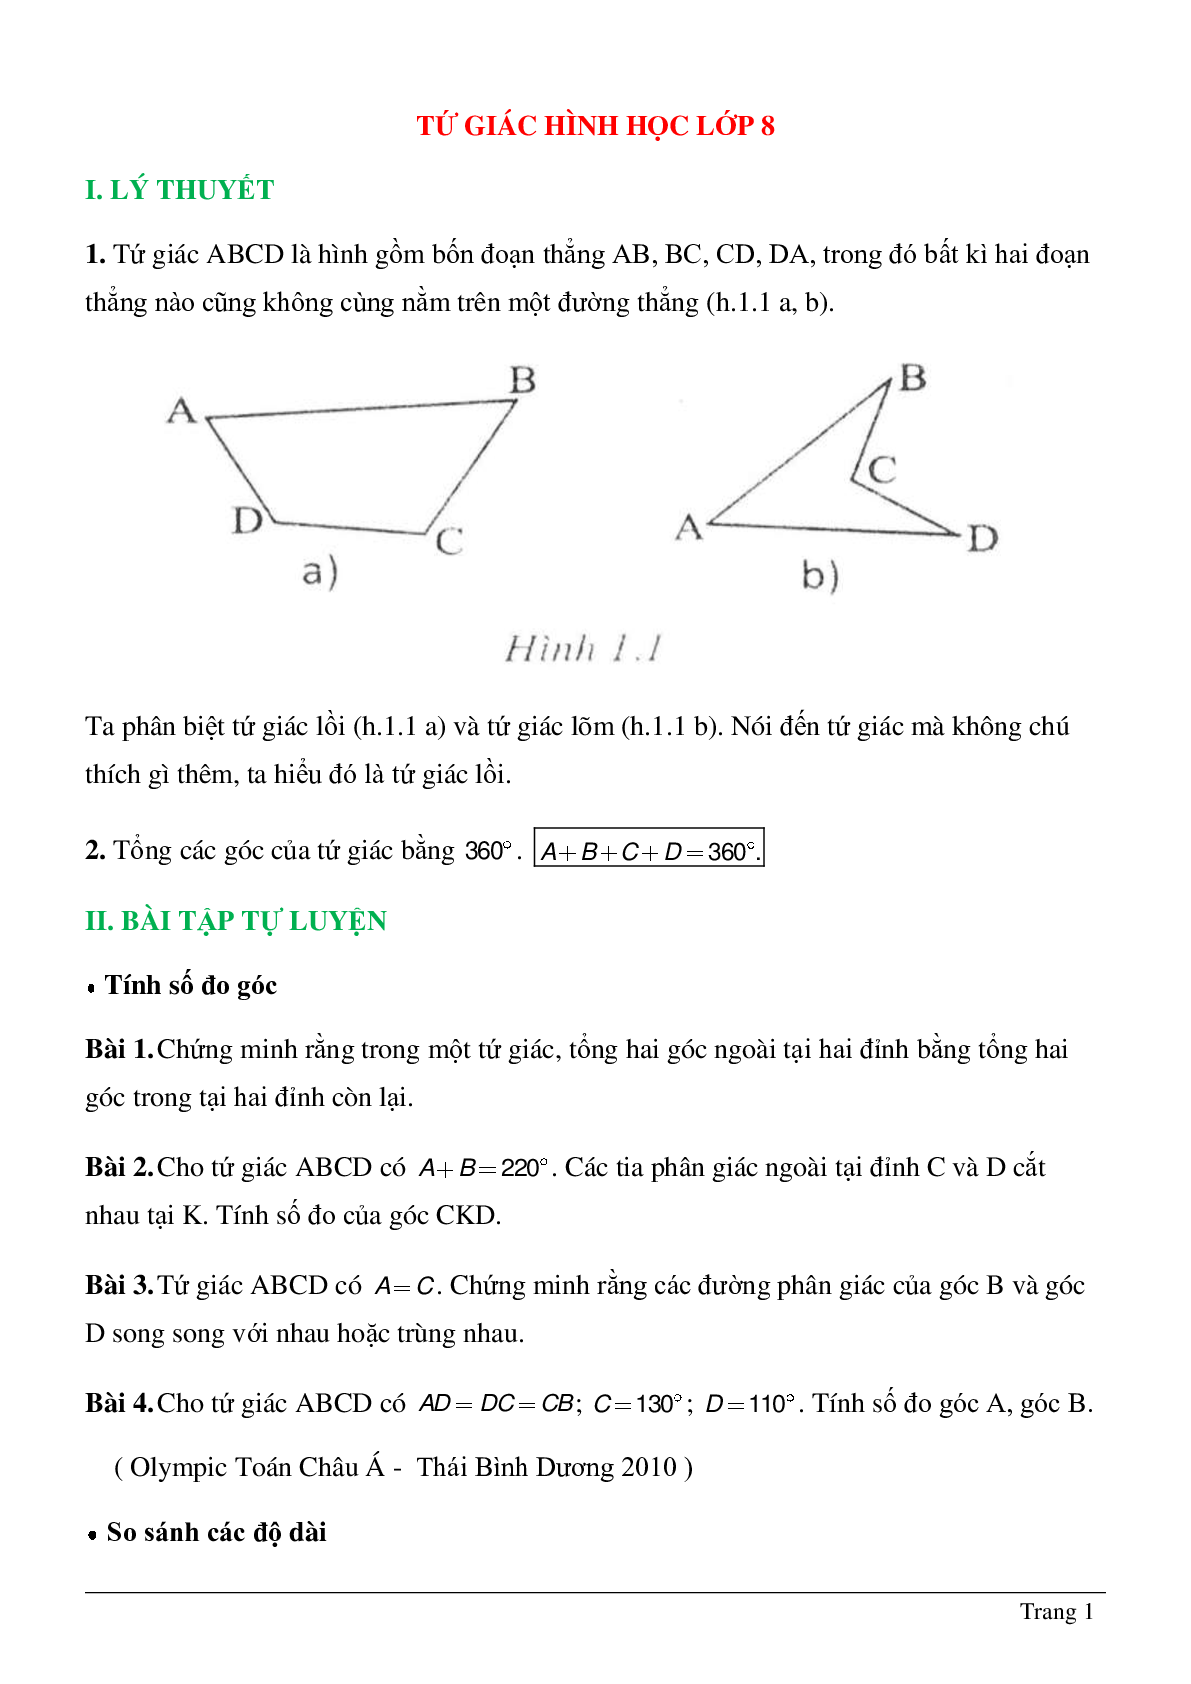 Tứ giác hình học lớp 8 (trang 1)